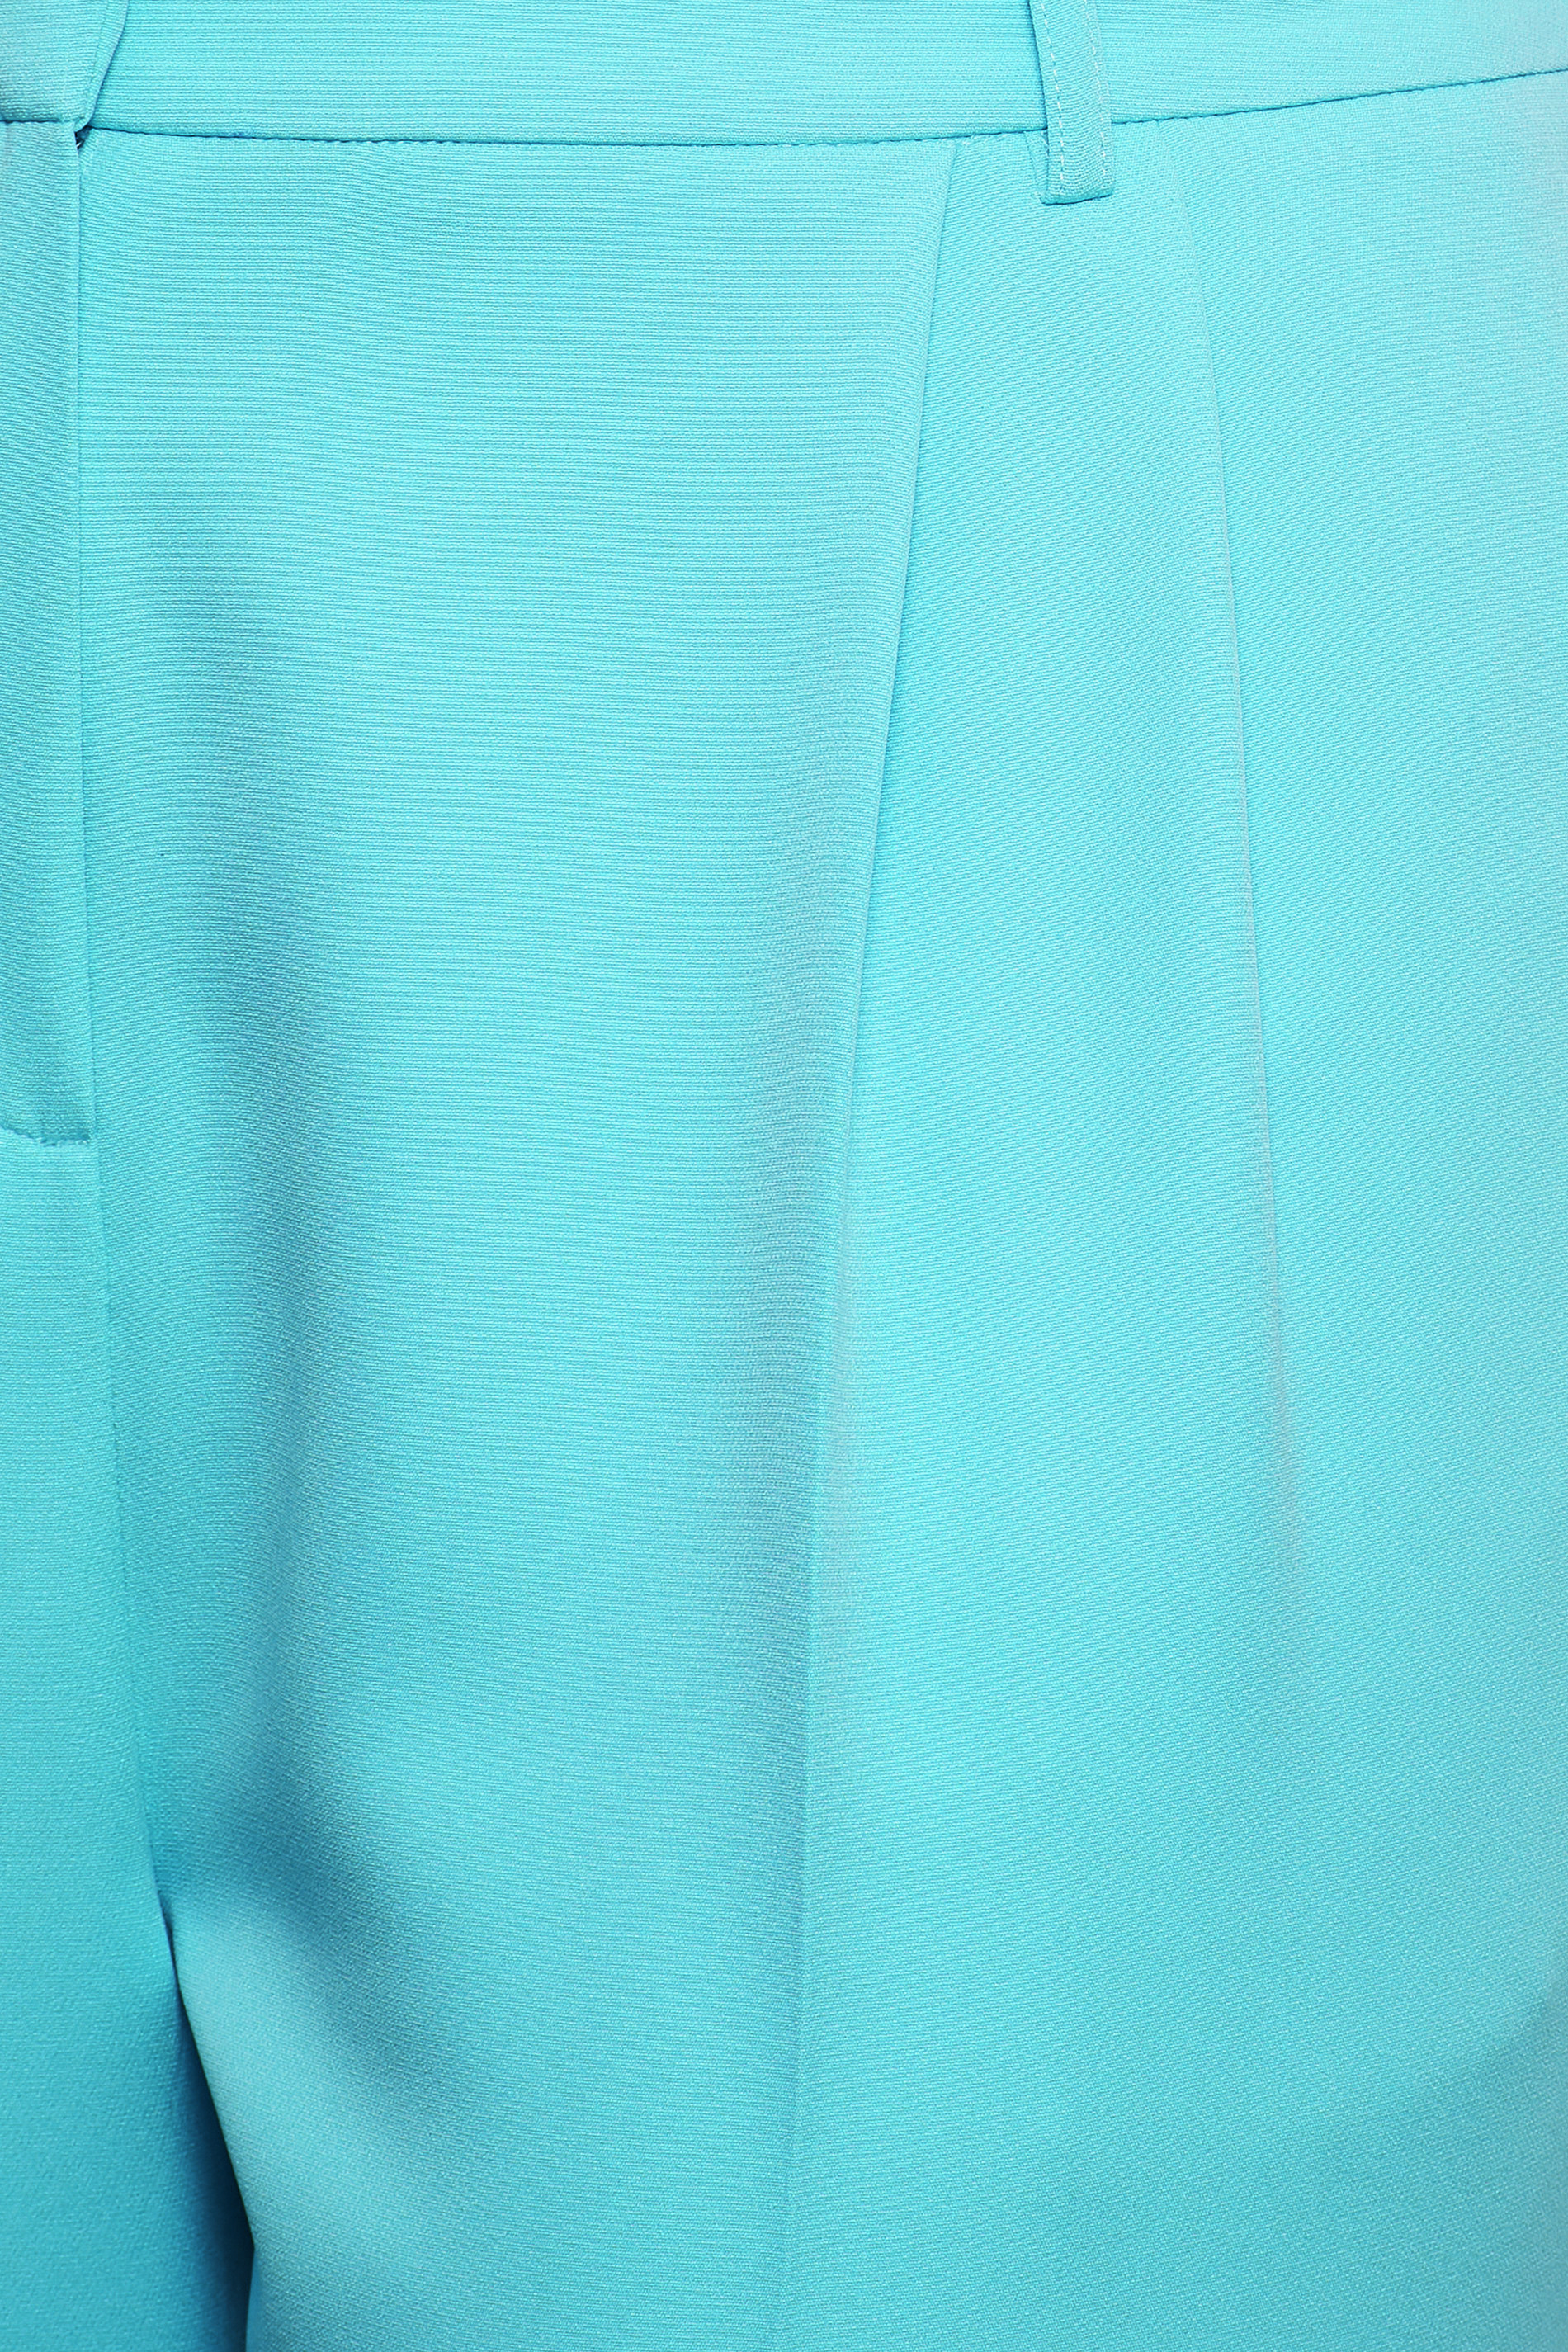 MAX&Co. ORTENSIA - Trousers - turquoise/blue - Zalando.de